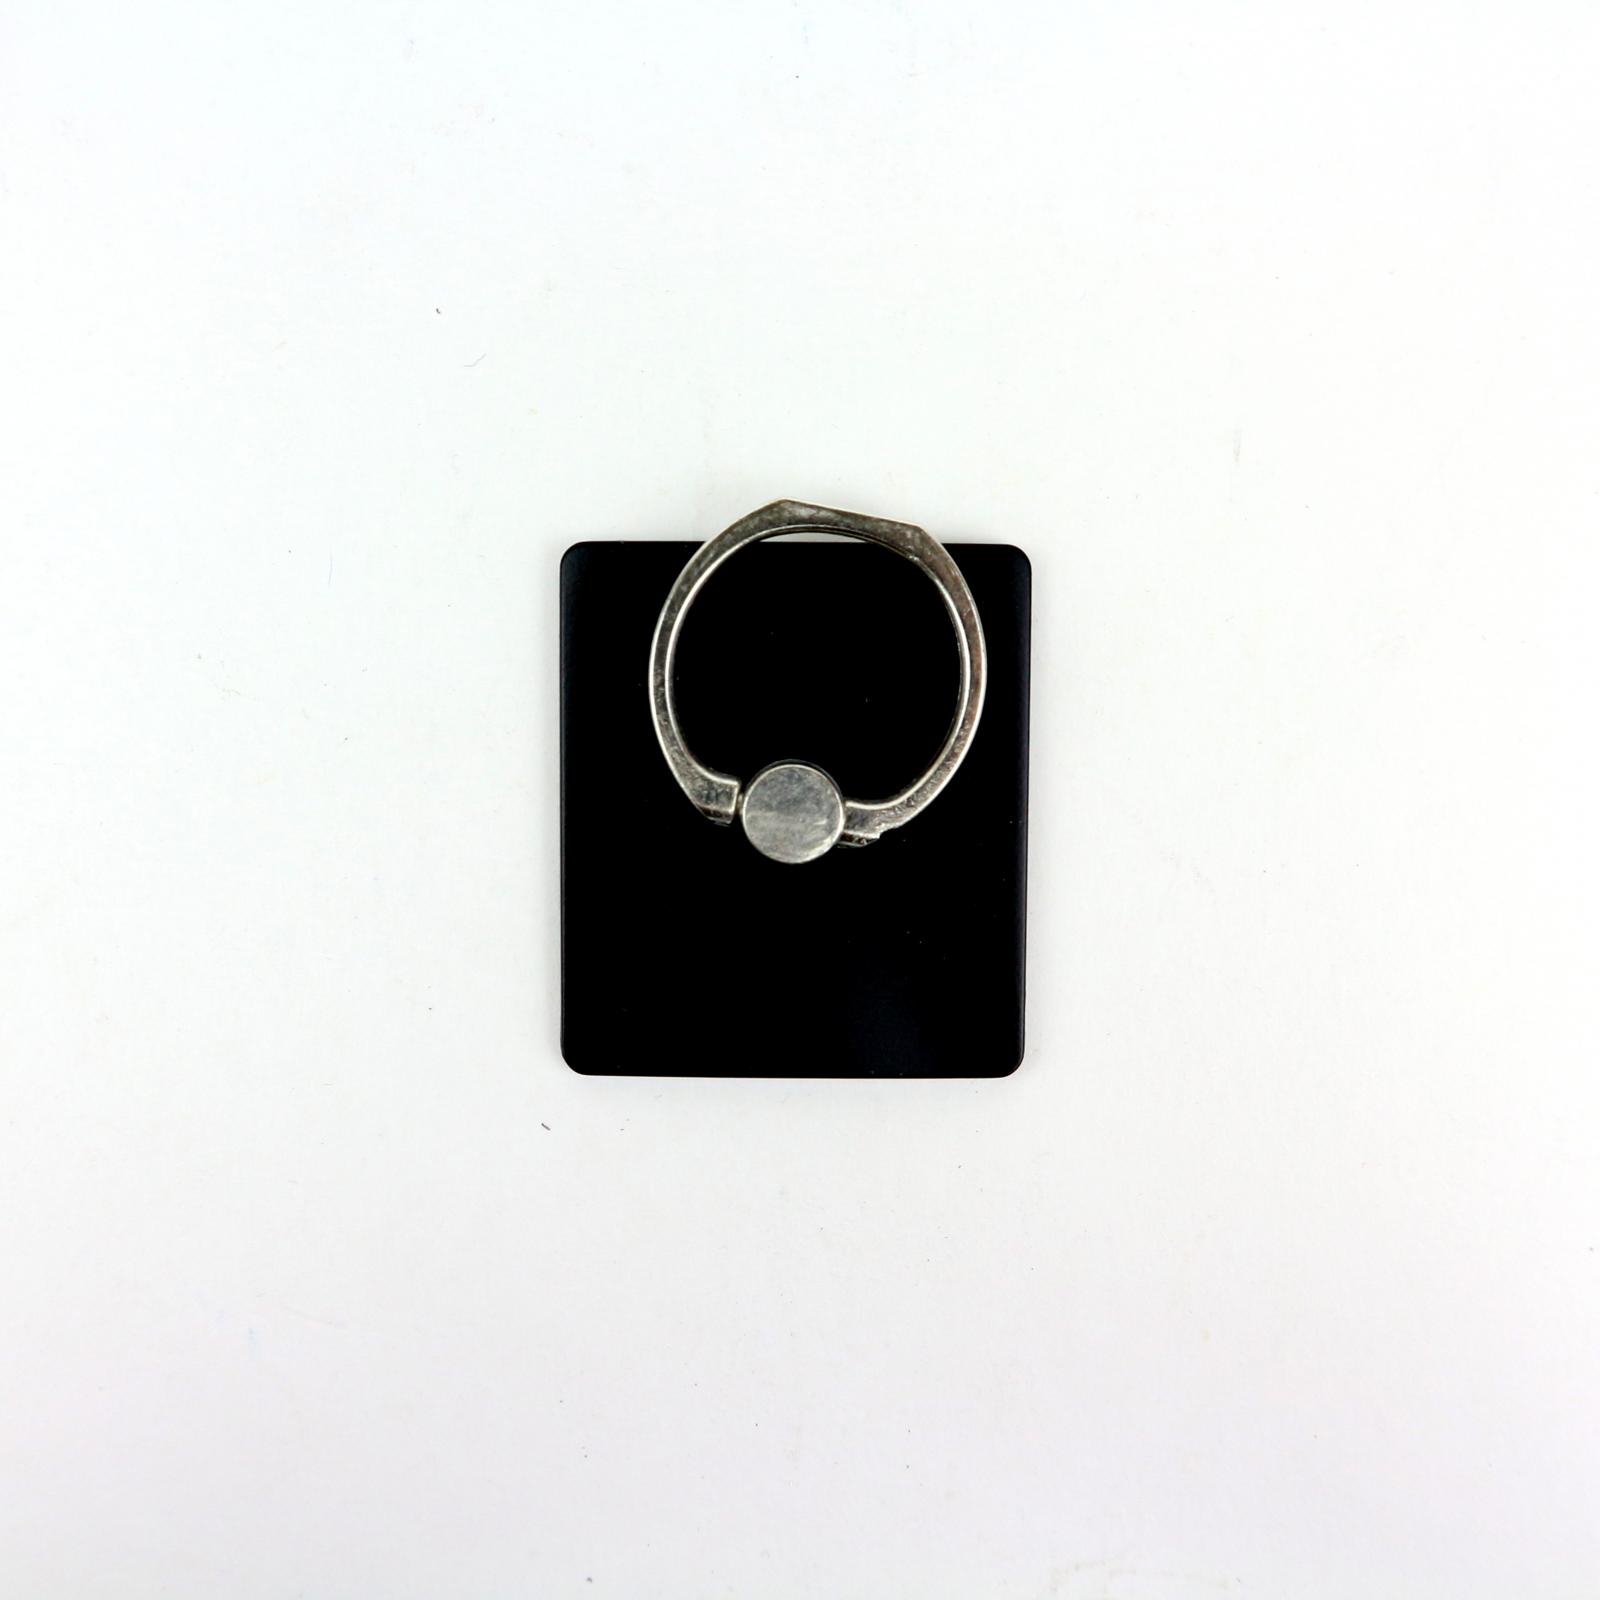 Кольцо-держатель для телефона, 4*3,5см, пластик, металл DX-447